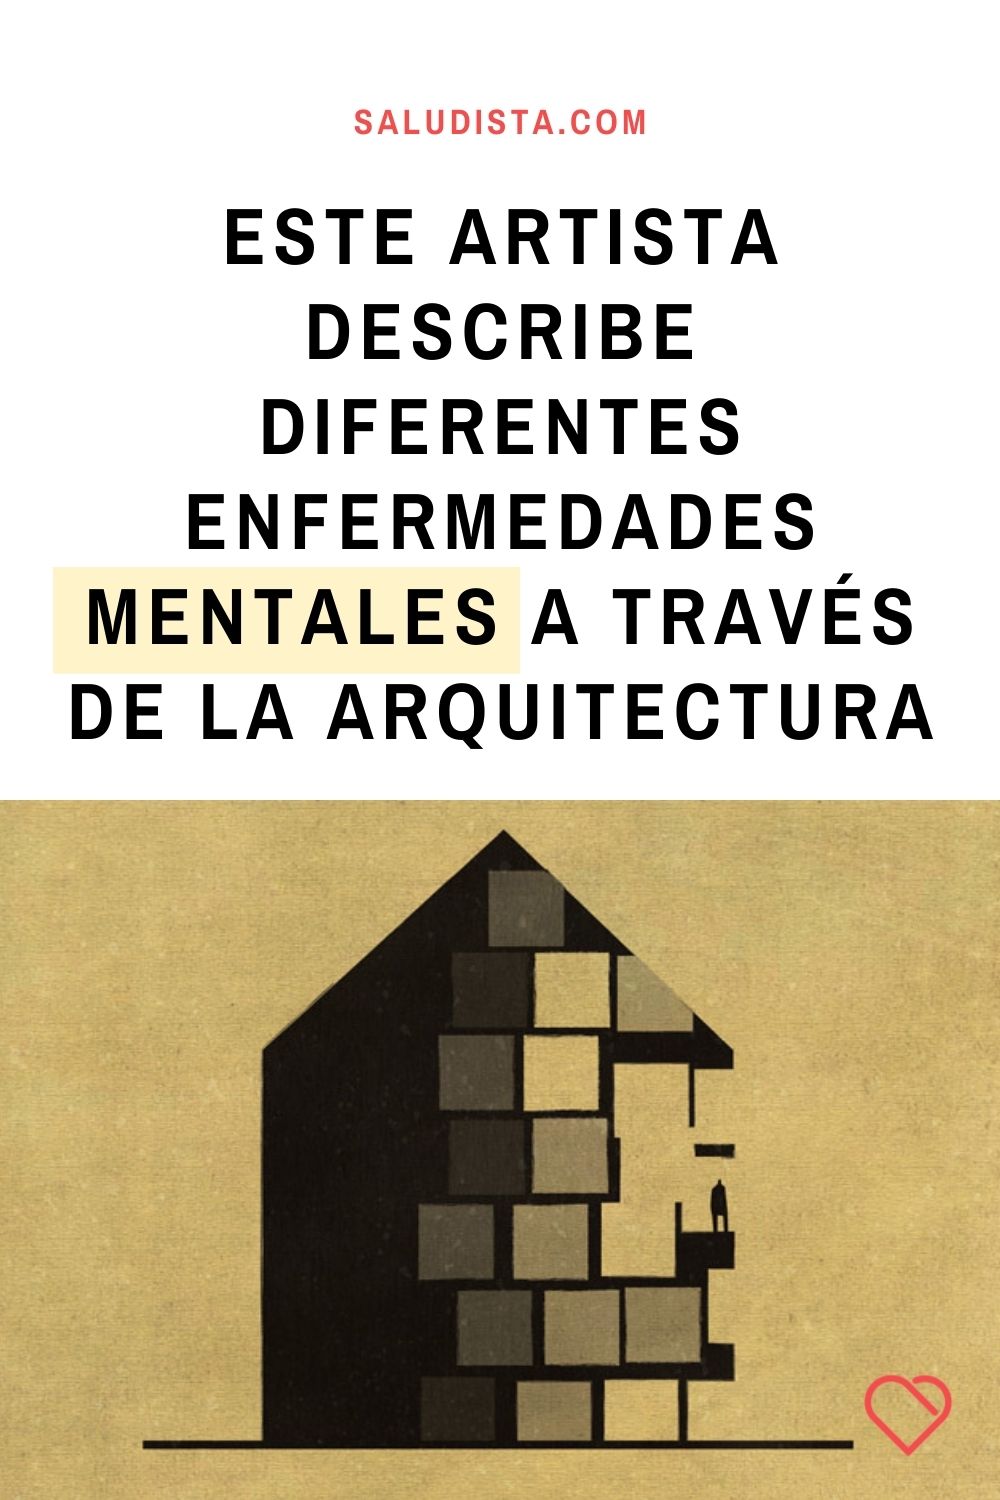 Este artista describe perfectamente diferentes enfermedades mentales a través de la arquitectura